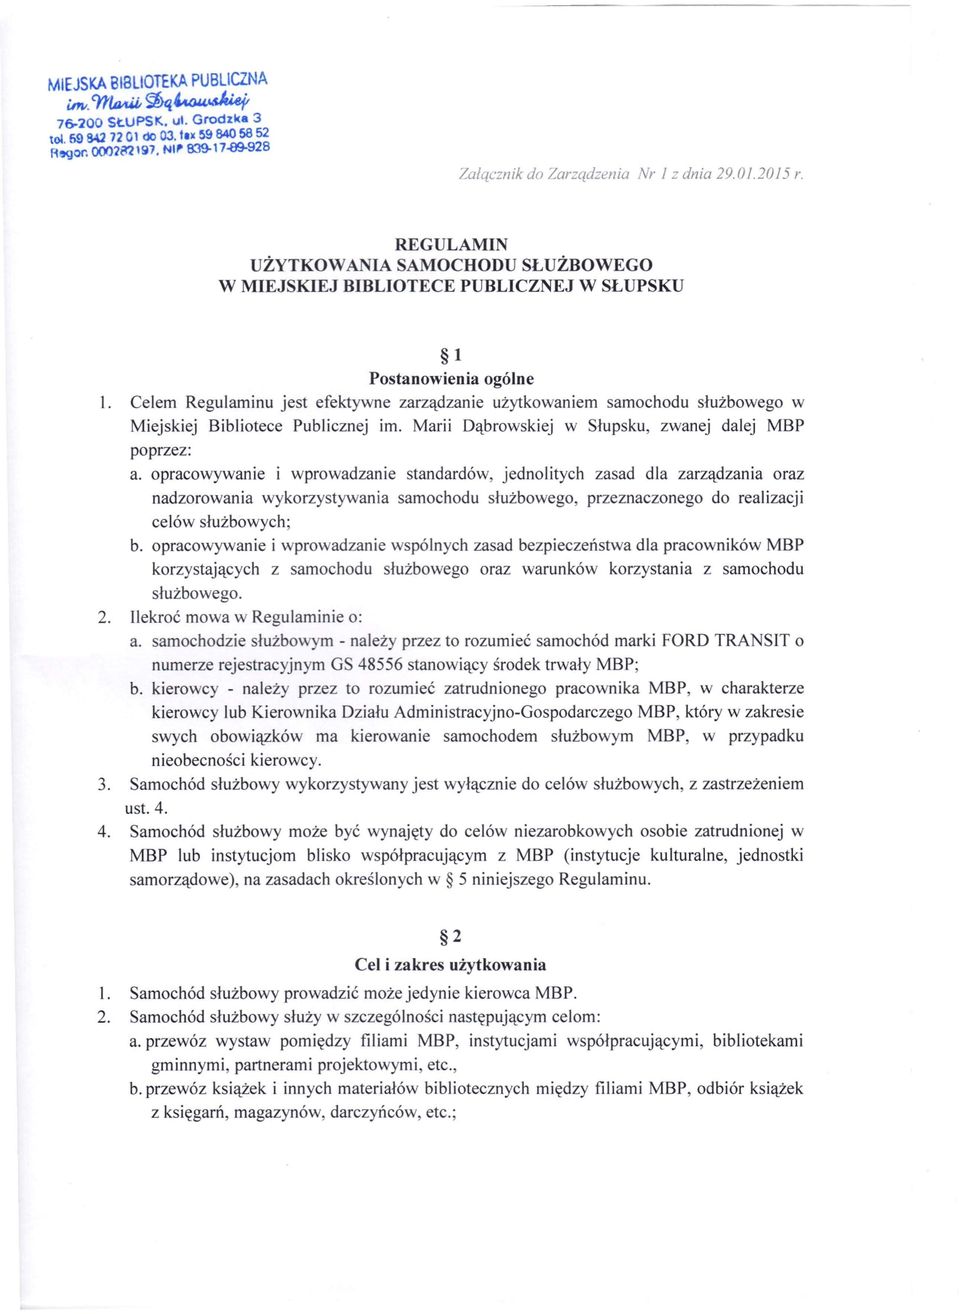 Celem Regulaminu jest efektywne zarządzanie użytkowaniem samochodu służbowego w Miejskiej Bibliotece Publicznej im. Marii Dąbrowskiej w Słupsku, zwanej dalej MBP poprzez: a.